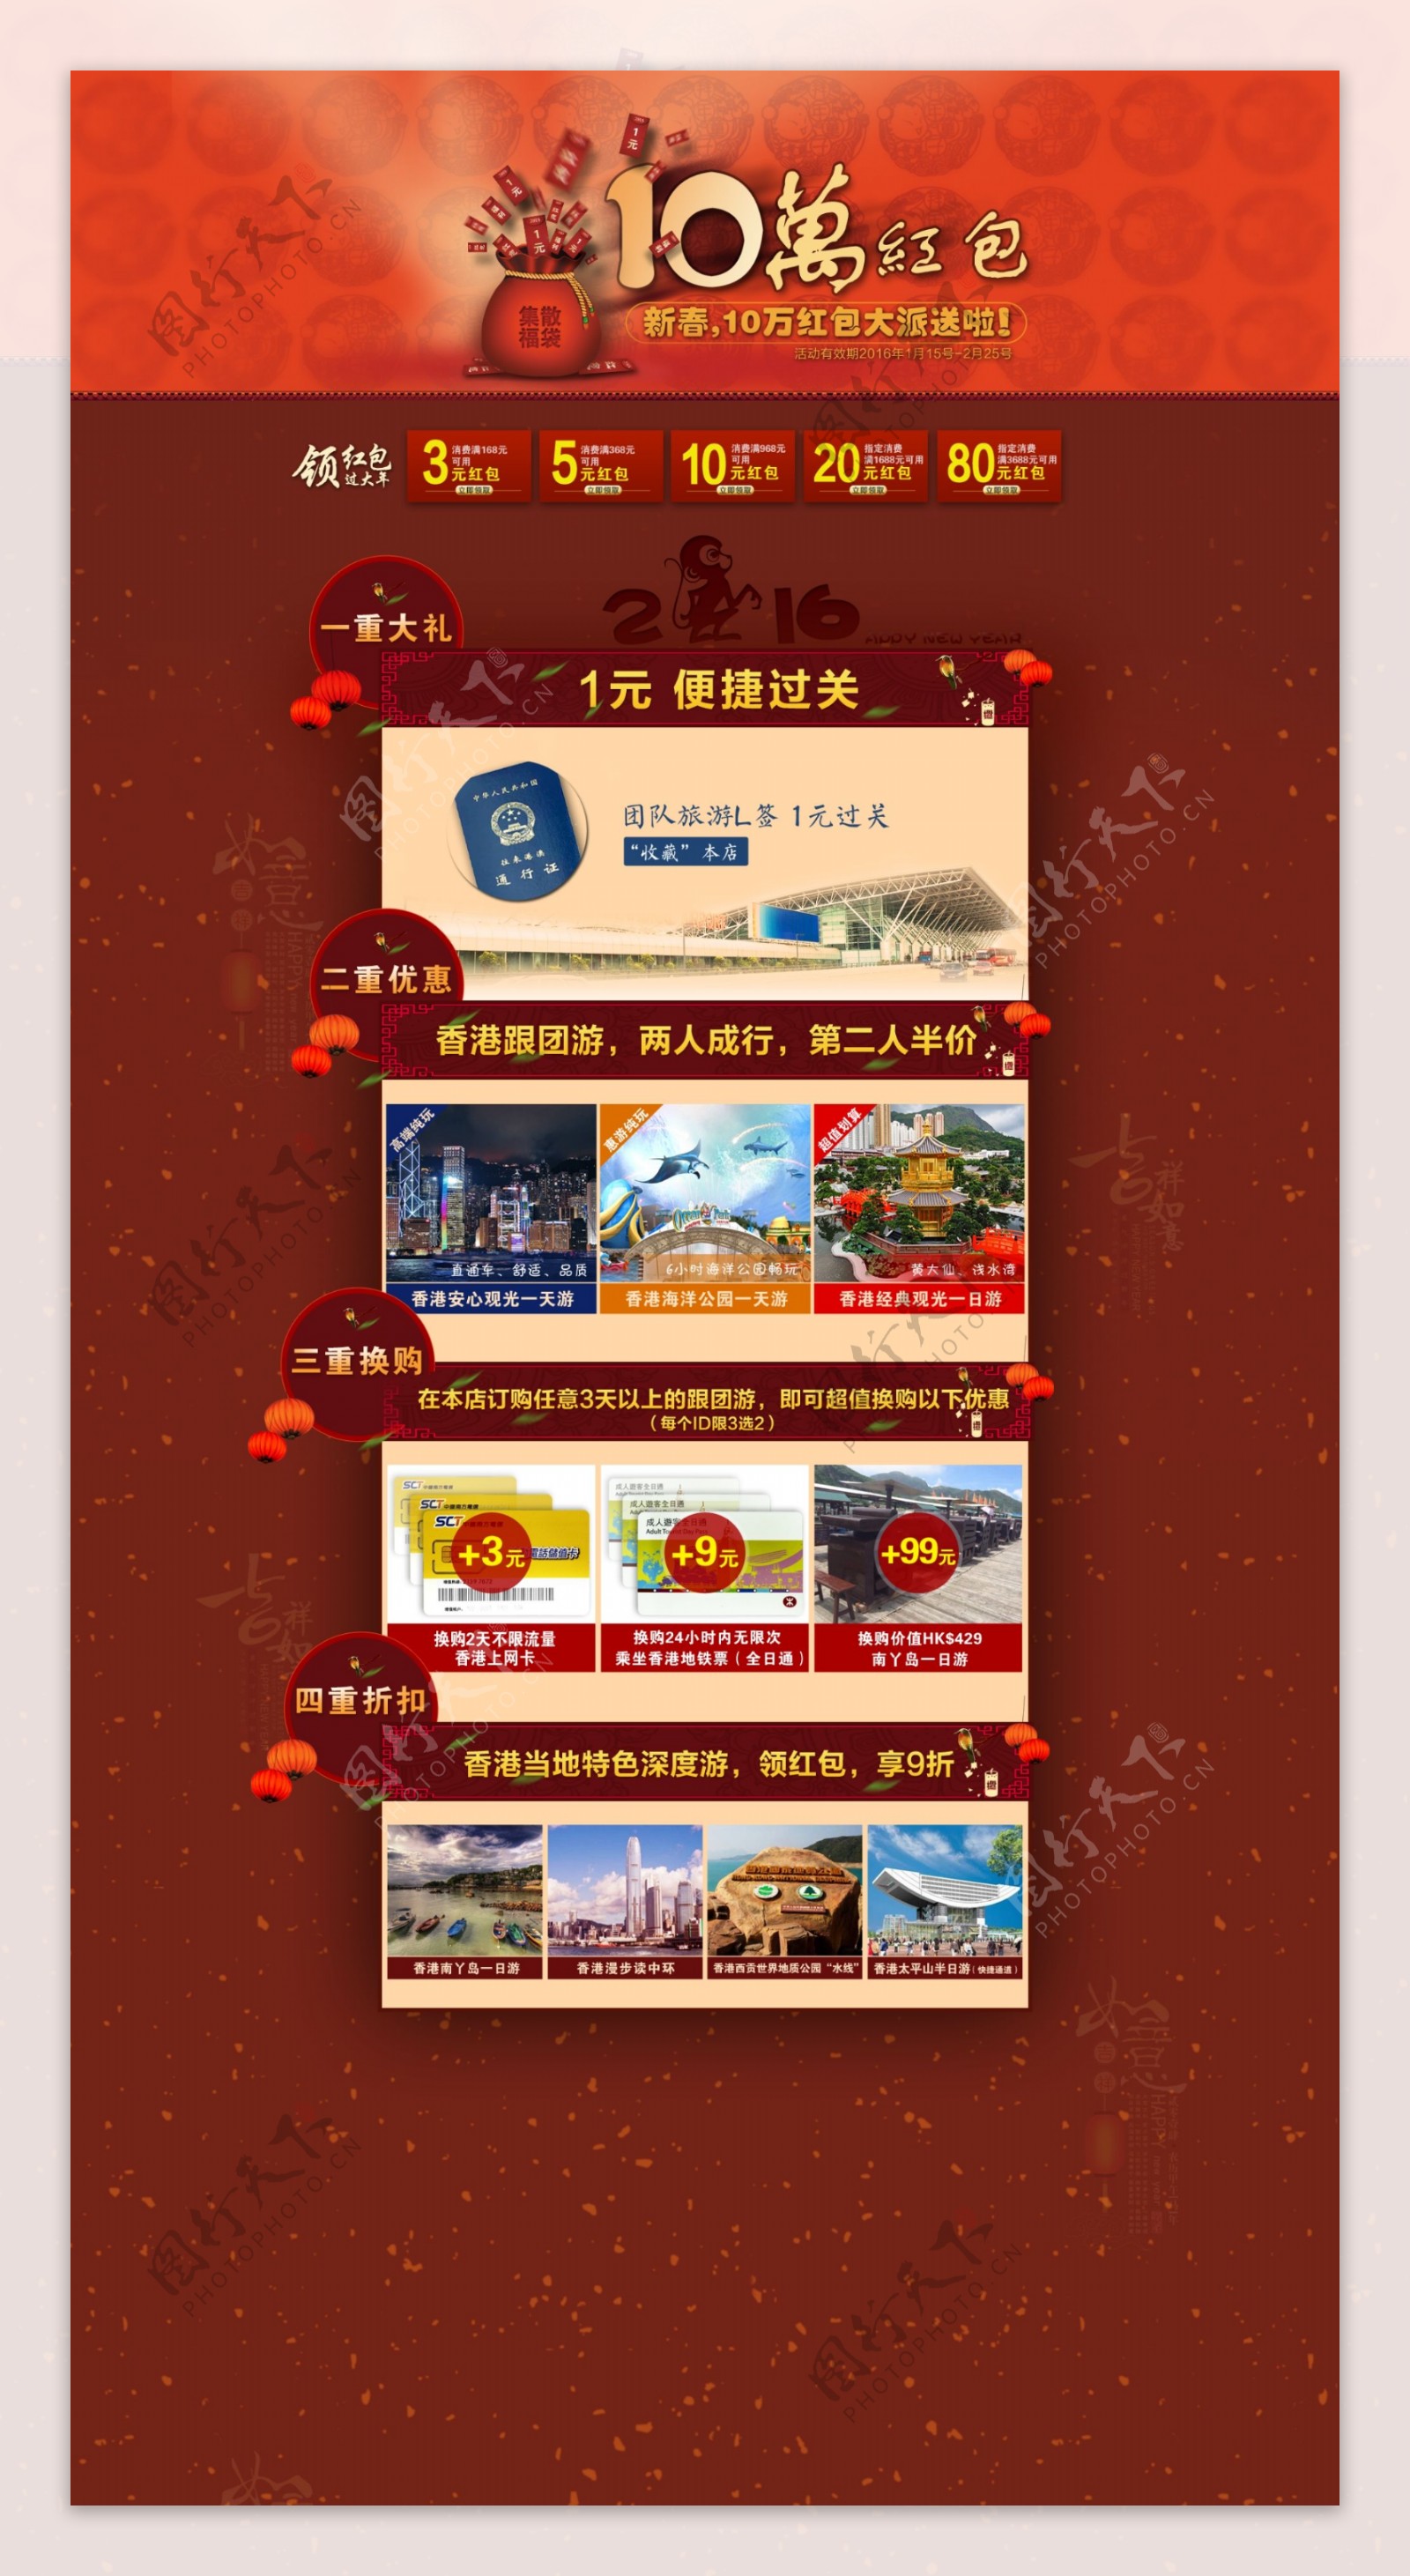 新春节专题页面图片